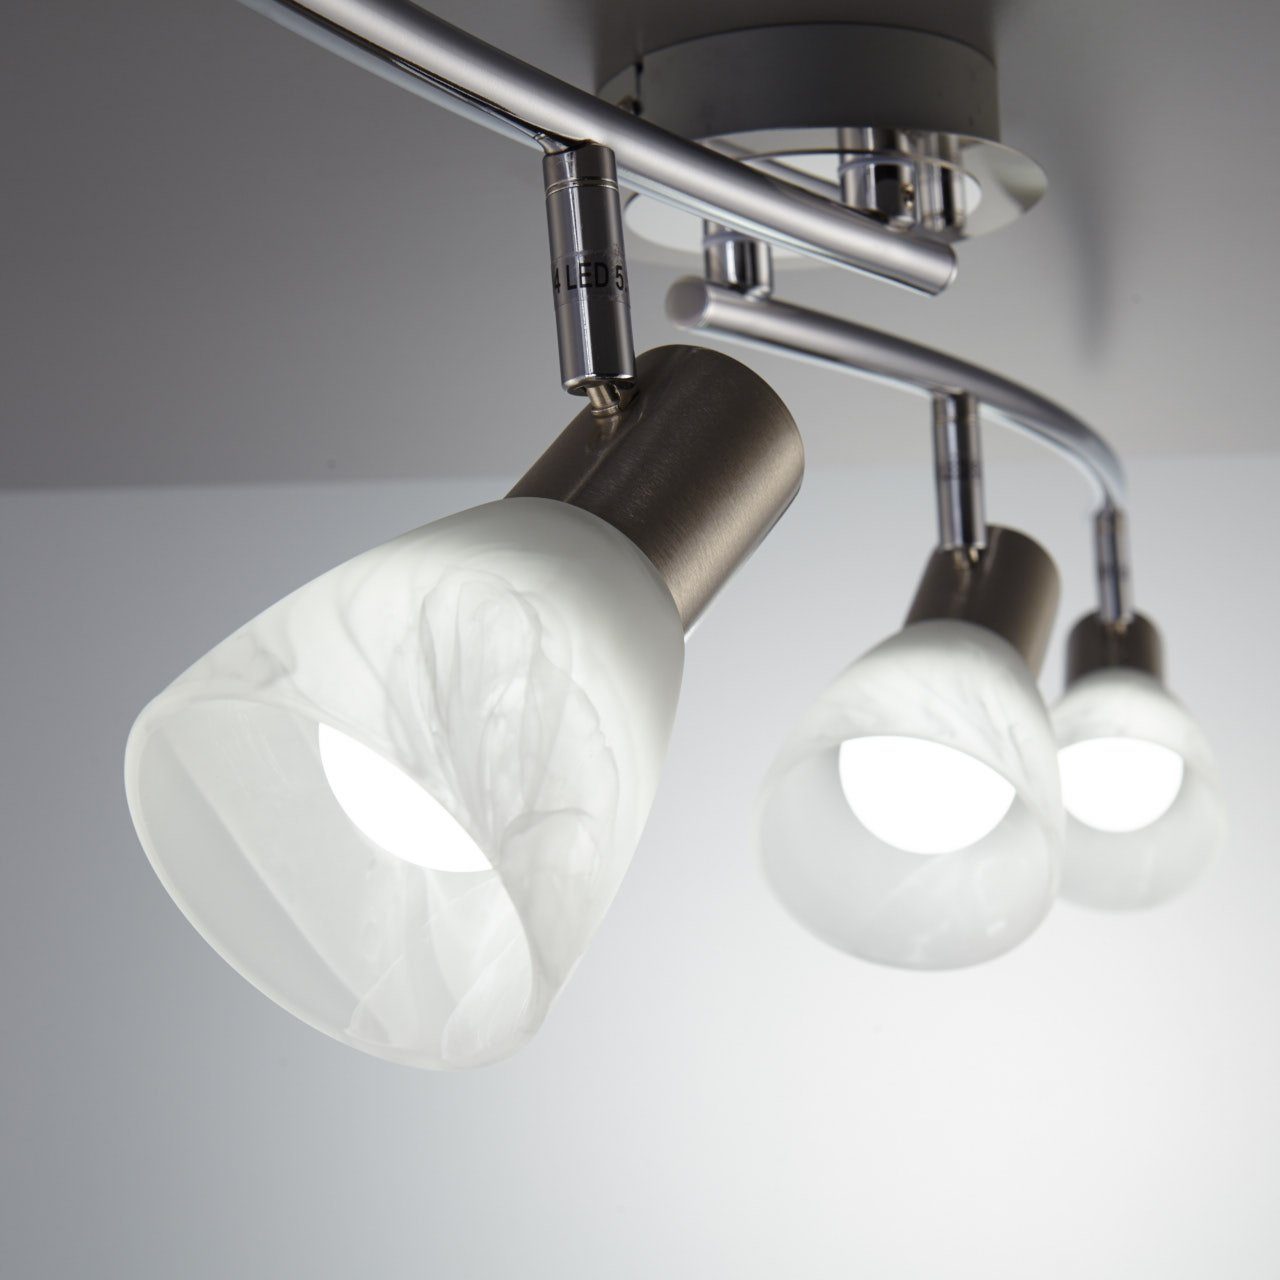 LED schwenkbar Warmweiß, Deckenlampe Spot Metall Glas Deckenstrahler, Wohnzimmer Leuchte Leuchtmittel B.K.Licht E14 wechselbar, LED